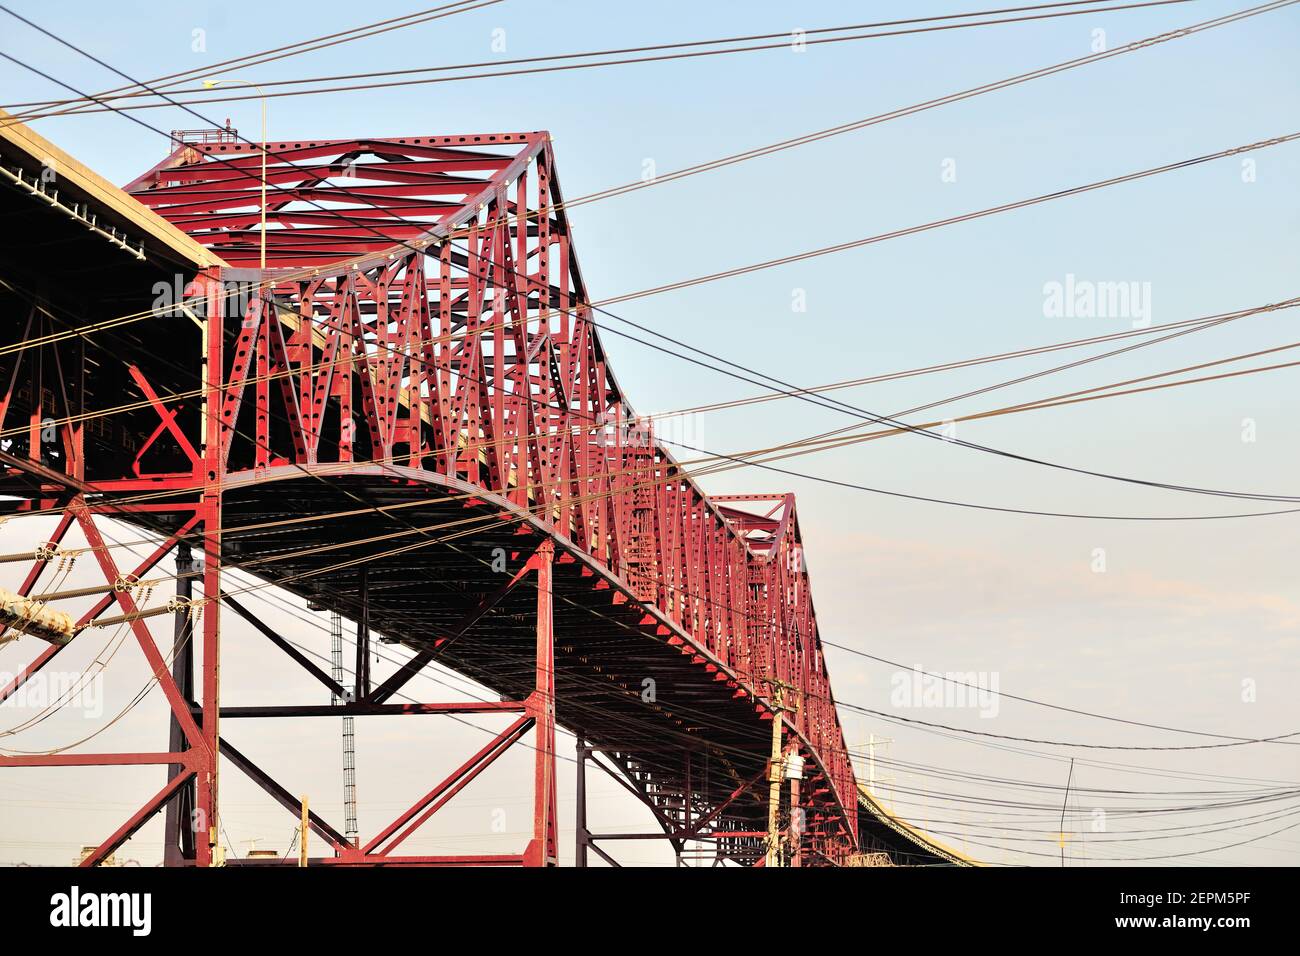 Chicago, Illinois, Stati Uniti. Un modello di linee elettriche incorniciano il ponte Chicago Skyway sul fiume Calumet. Foto Stock